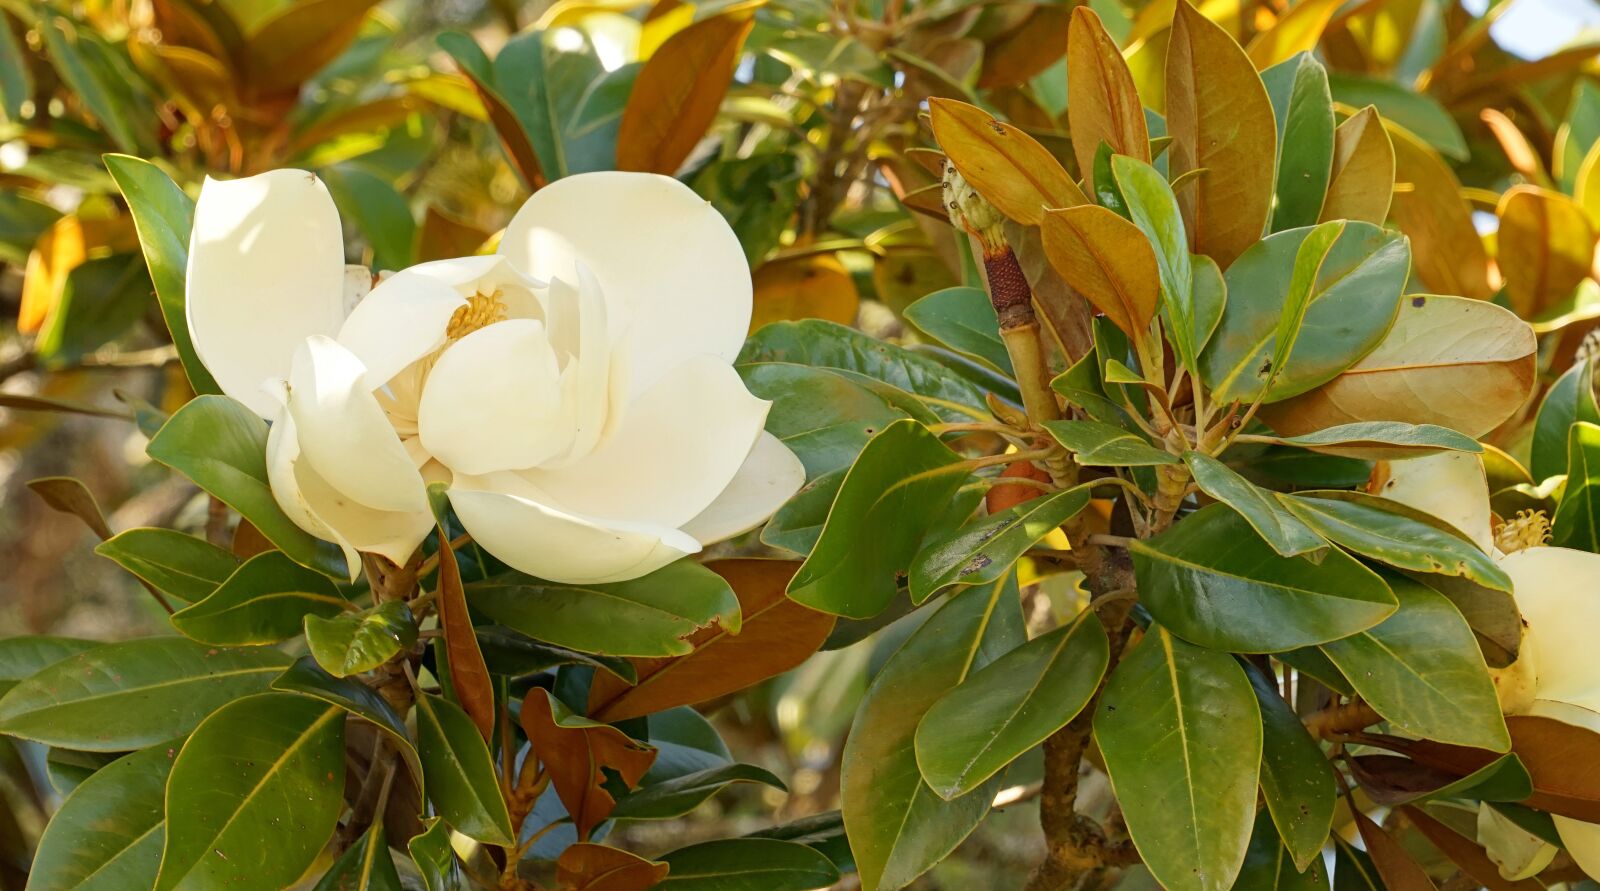 Sony a7 + Sony FE 24-240mm F3.5-6.3 OSS sample photo. Magnolia, blossom, bloom photography